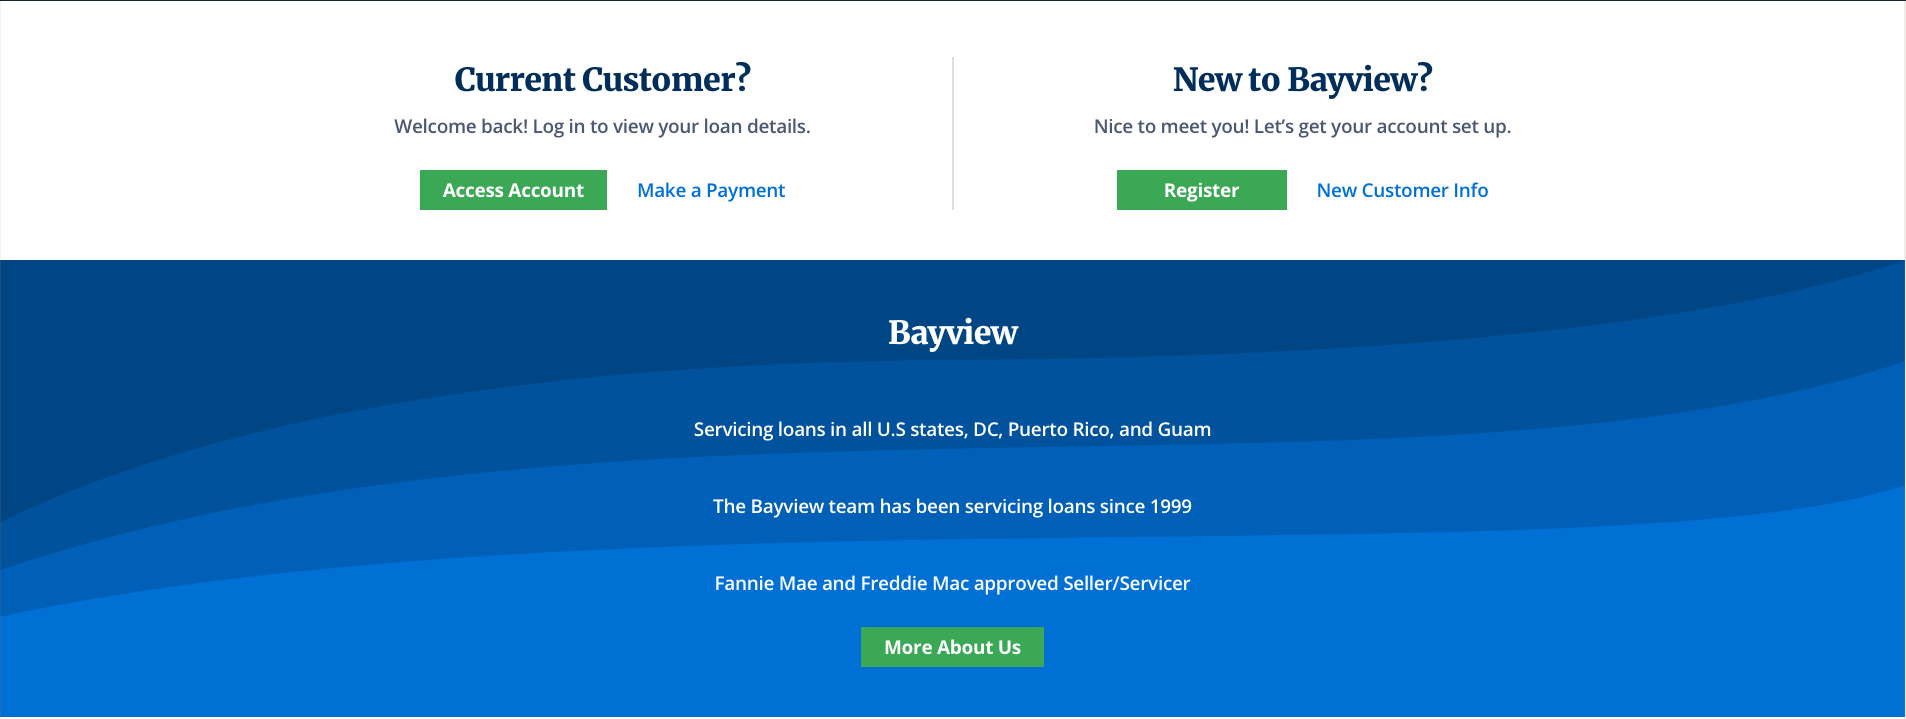 bayview - iGreen Marketing